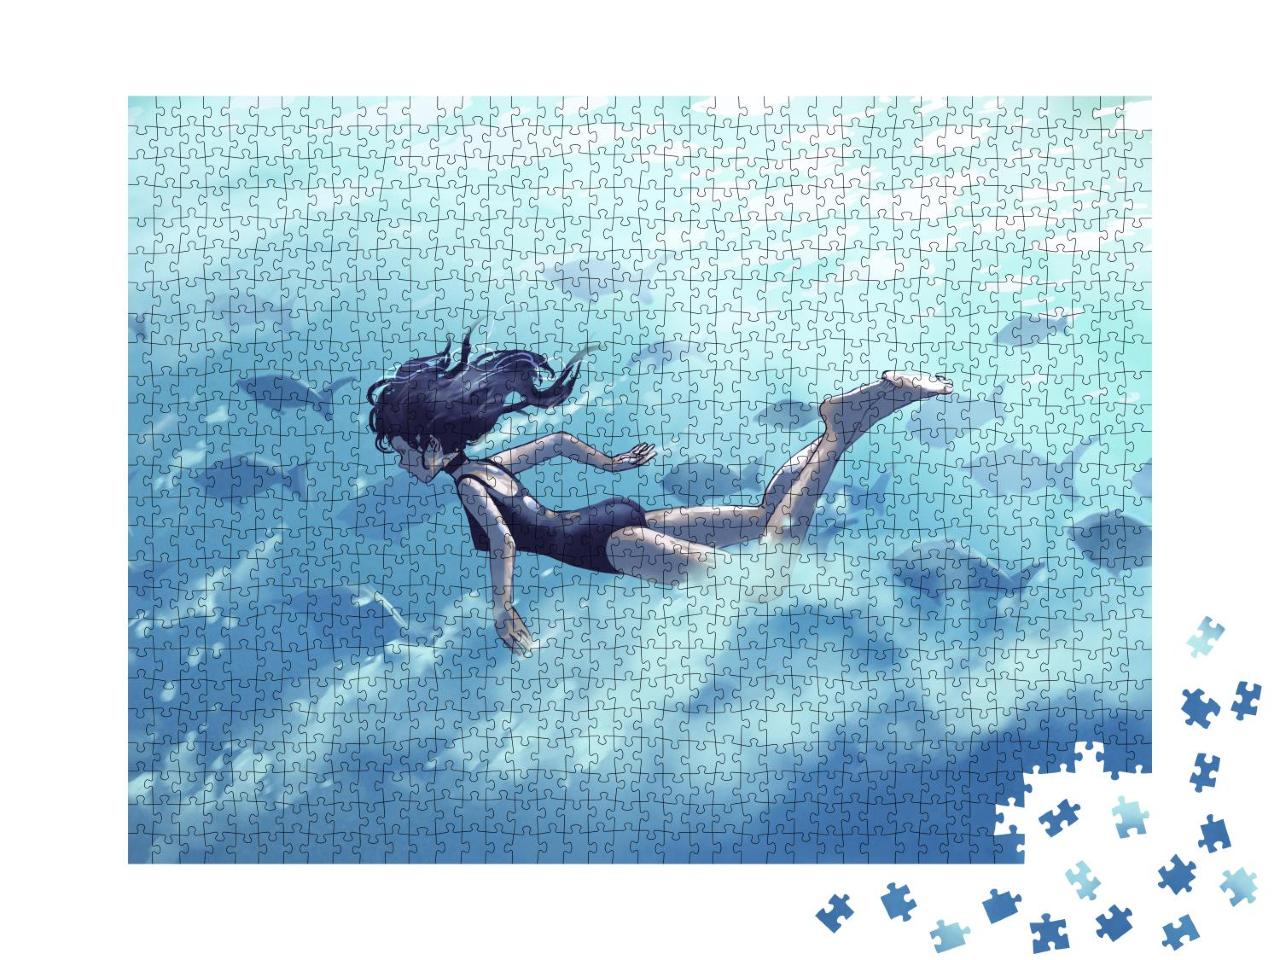 Puzzle 1000 Teile „Digitale Kunst: Junge Frau beim Tauchen mit einem Fischschwarm im Meer“